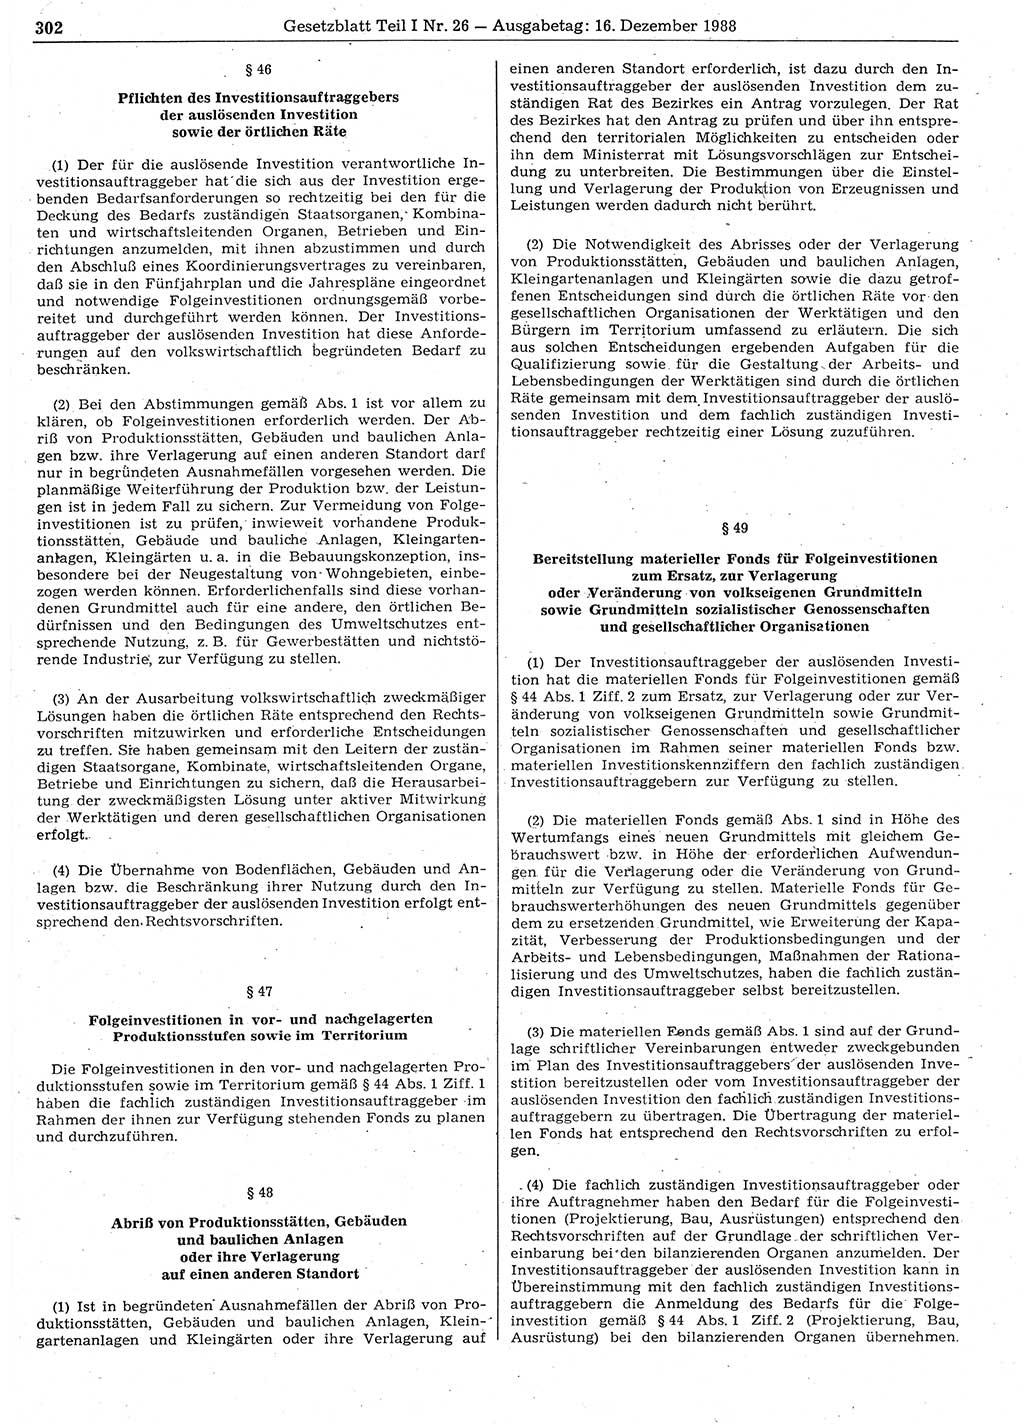 Gesetzblatt (GBl.) der Deutschen Demokratischen Republik (DDR) Teil Ⅰ 1988, Seite 302 (GBl. DDR Ⅰ 1988, S. 302)